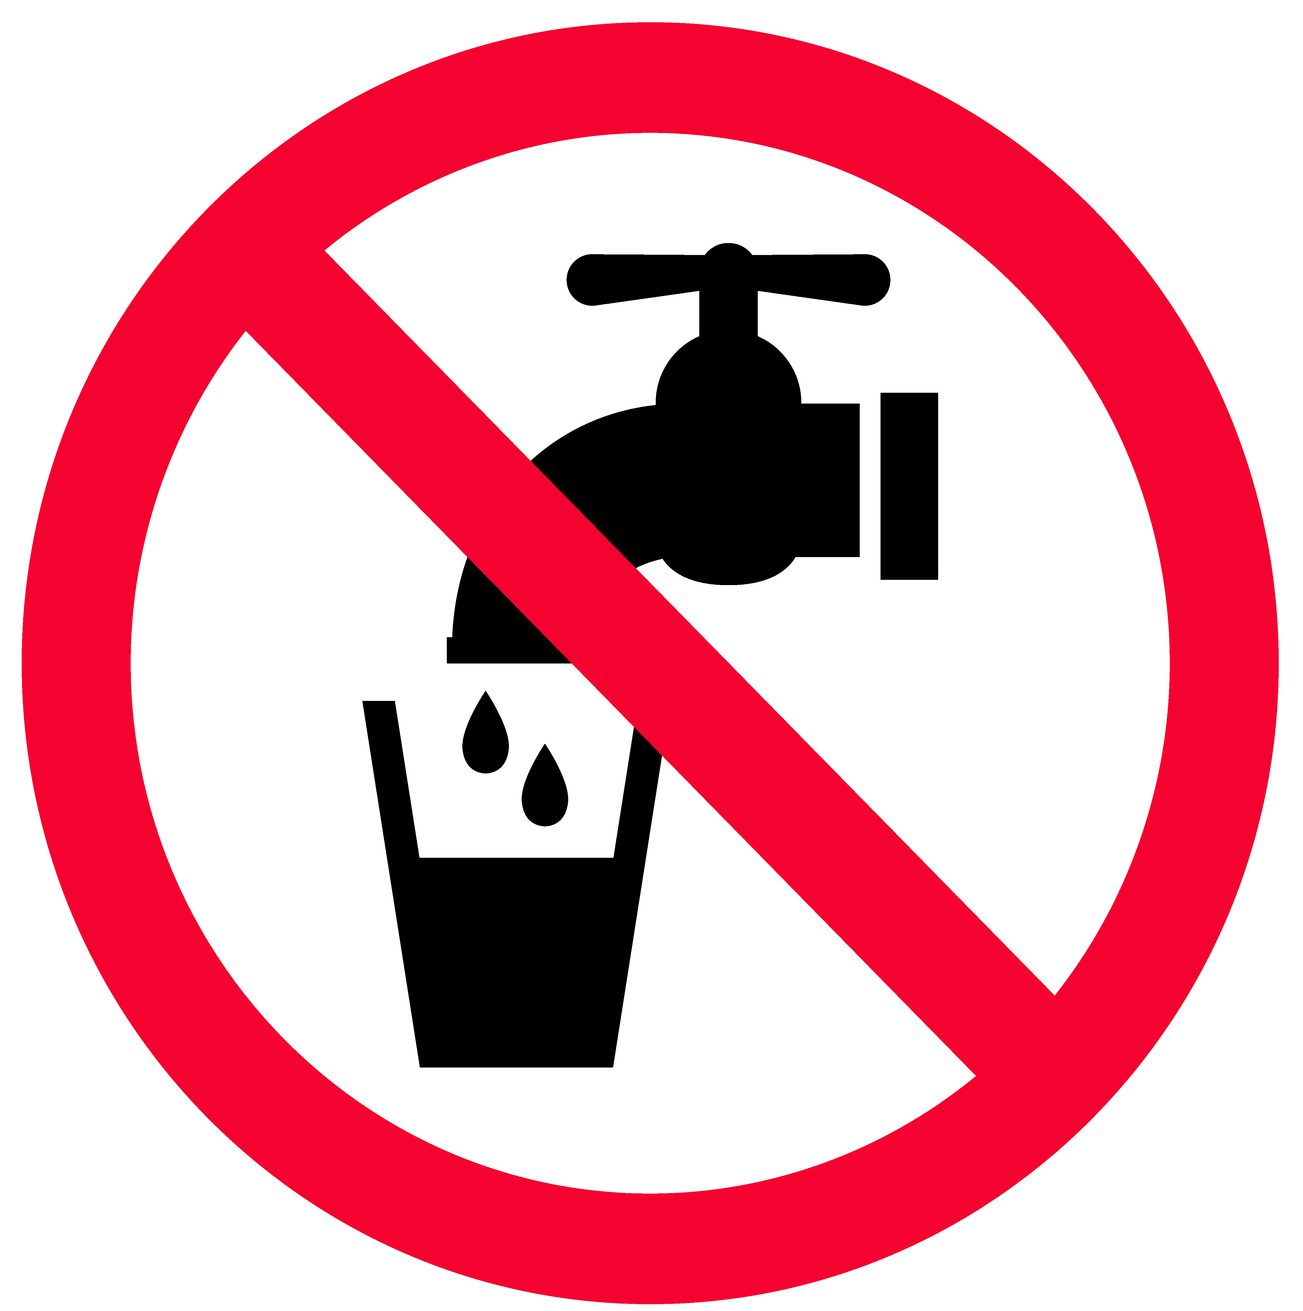 Señal de agua no potable. Prohibición roja de agua no potable